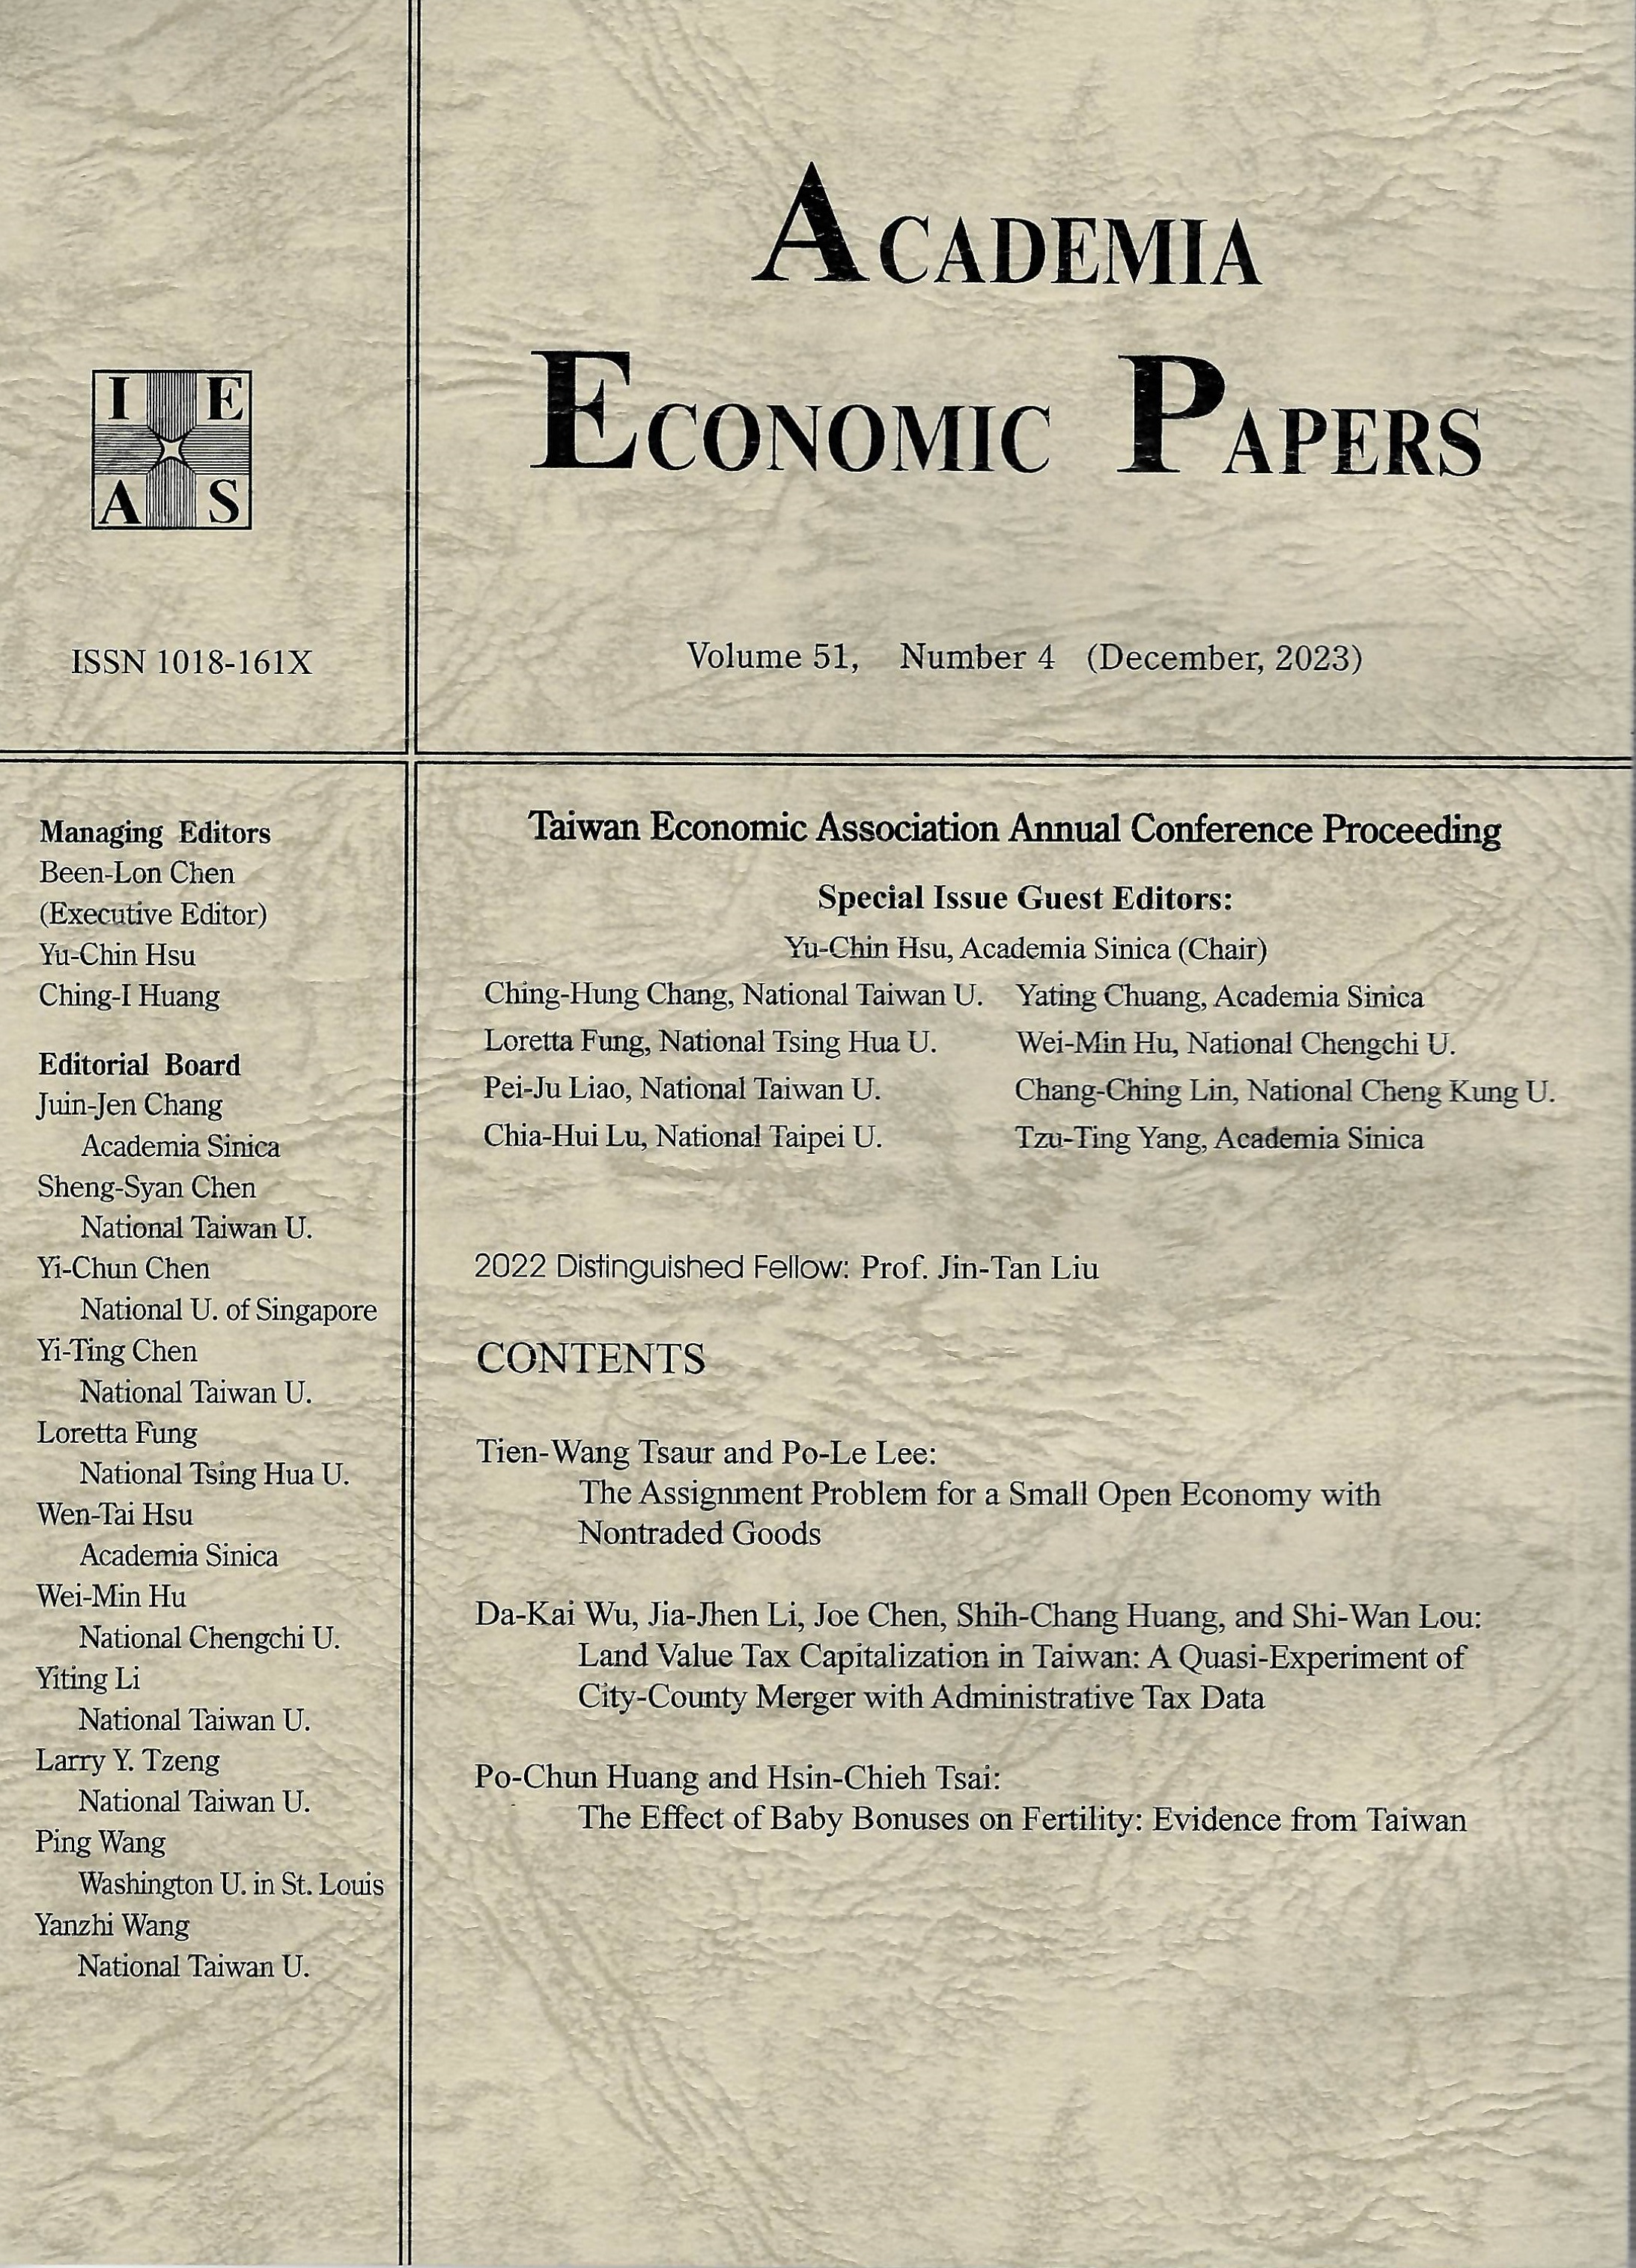 Academia Economic Papers (Vol. 51, No. 4)